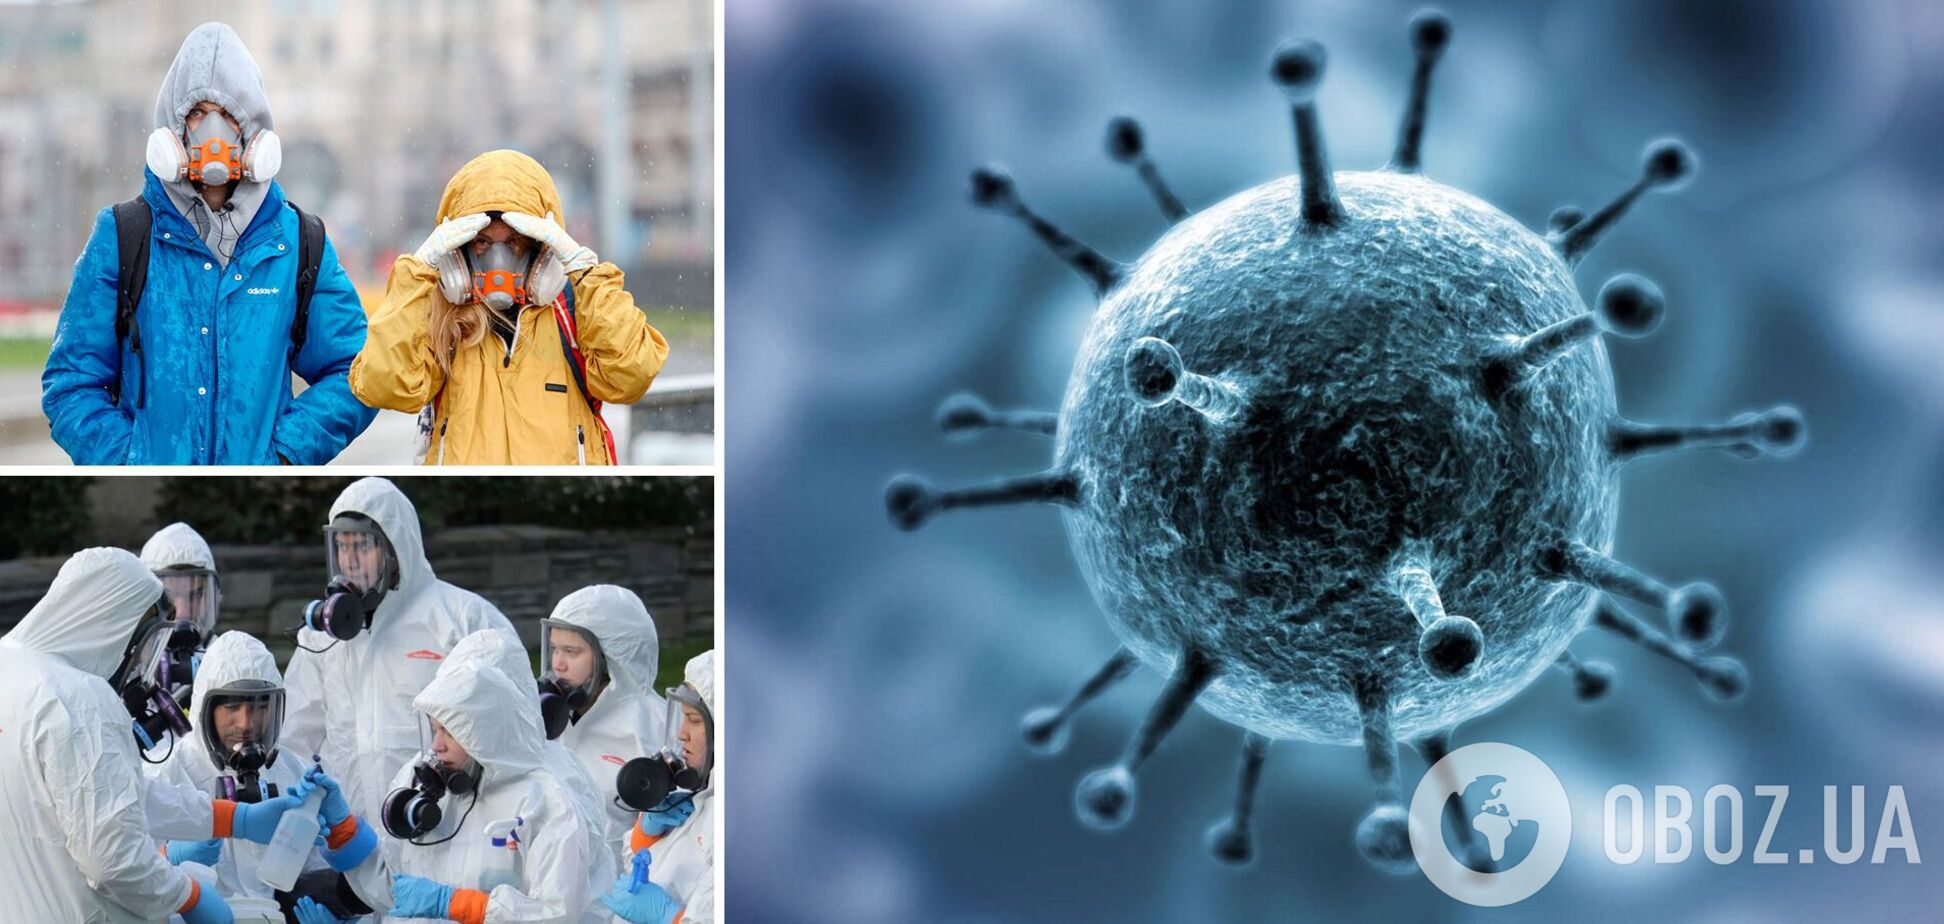 Советник ВОЗ: следующая пандемия может опять прийти из Китая, все вирусы возникают там. Интервью